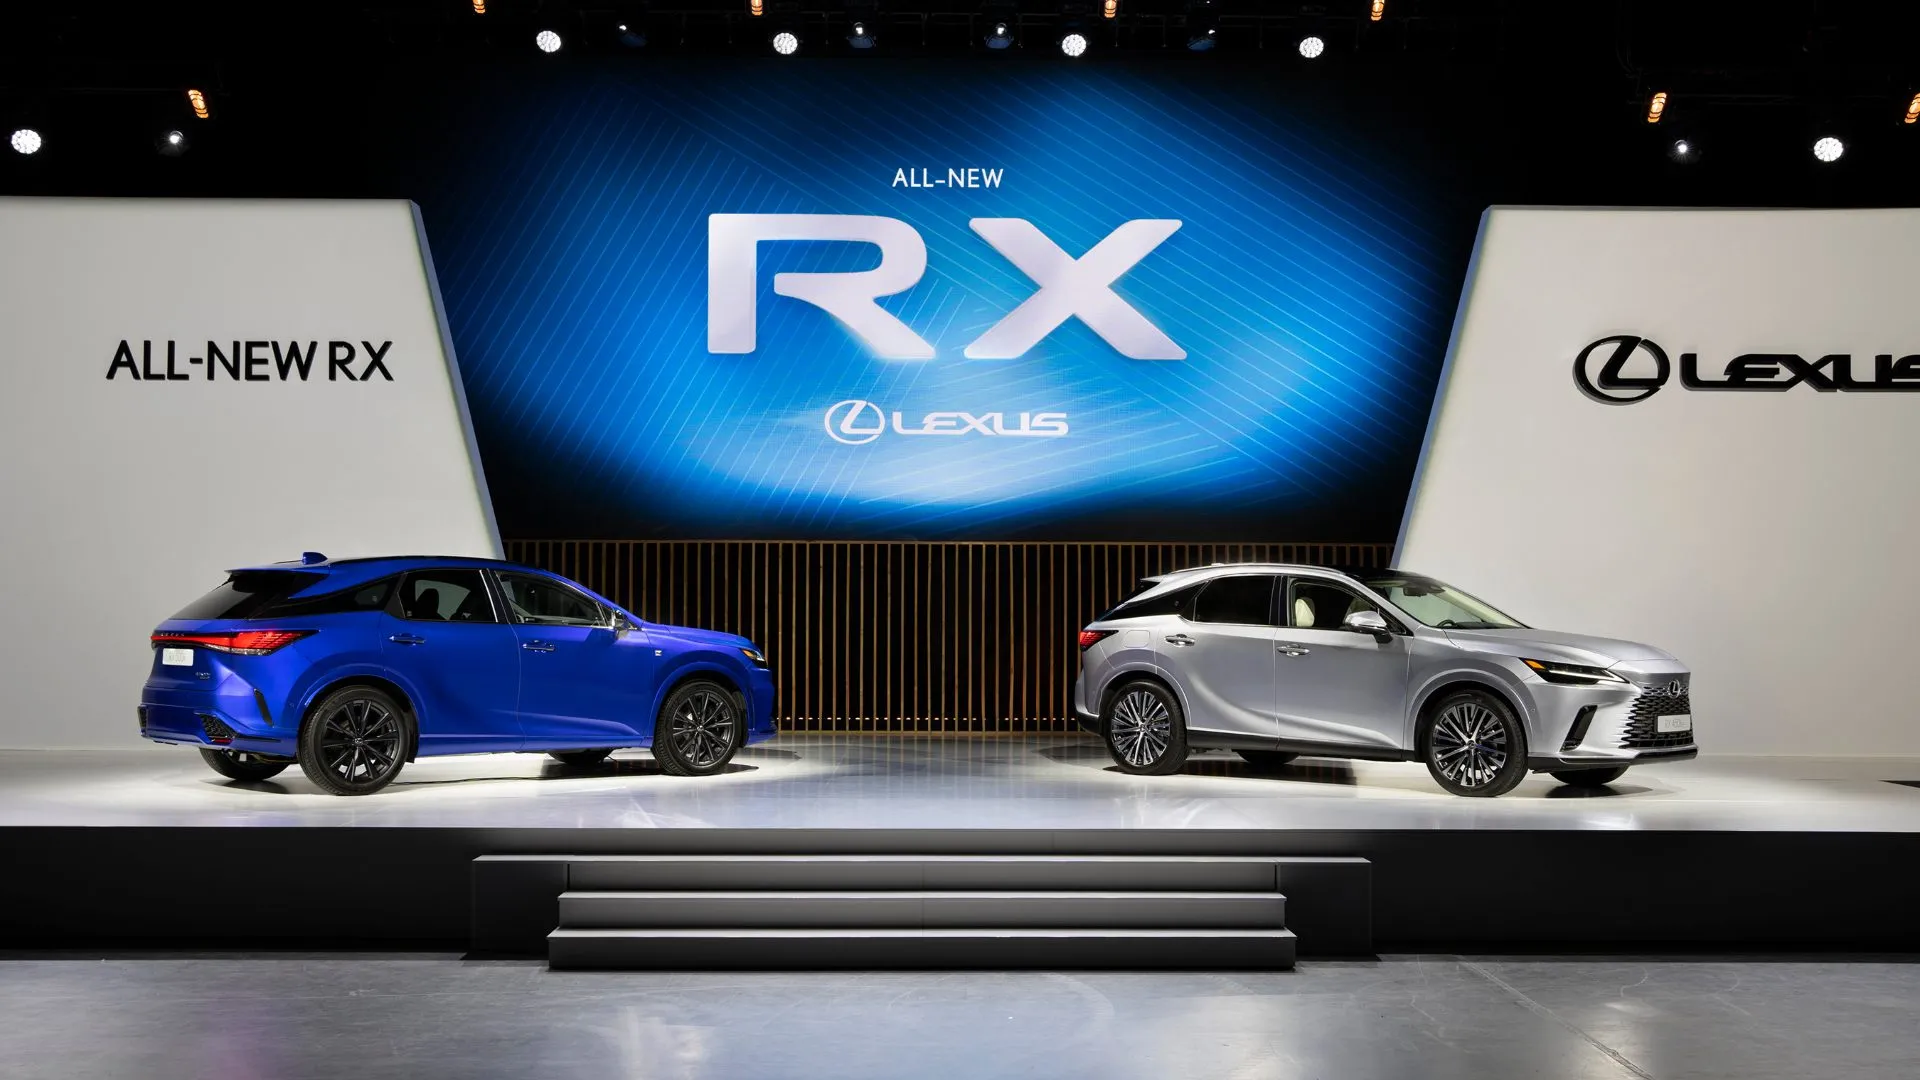 Hemos conocido en persona el nuevo Lexus RX